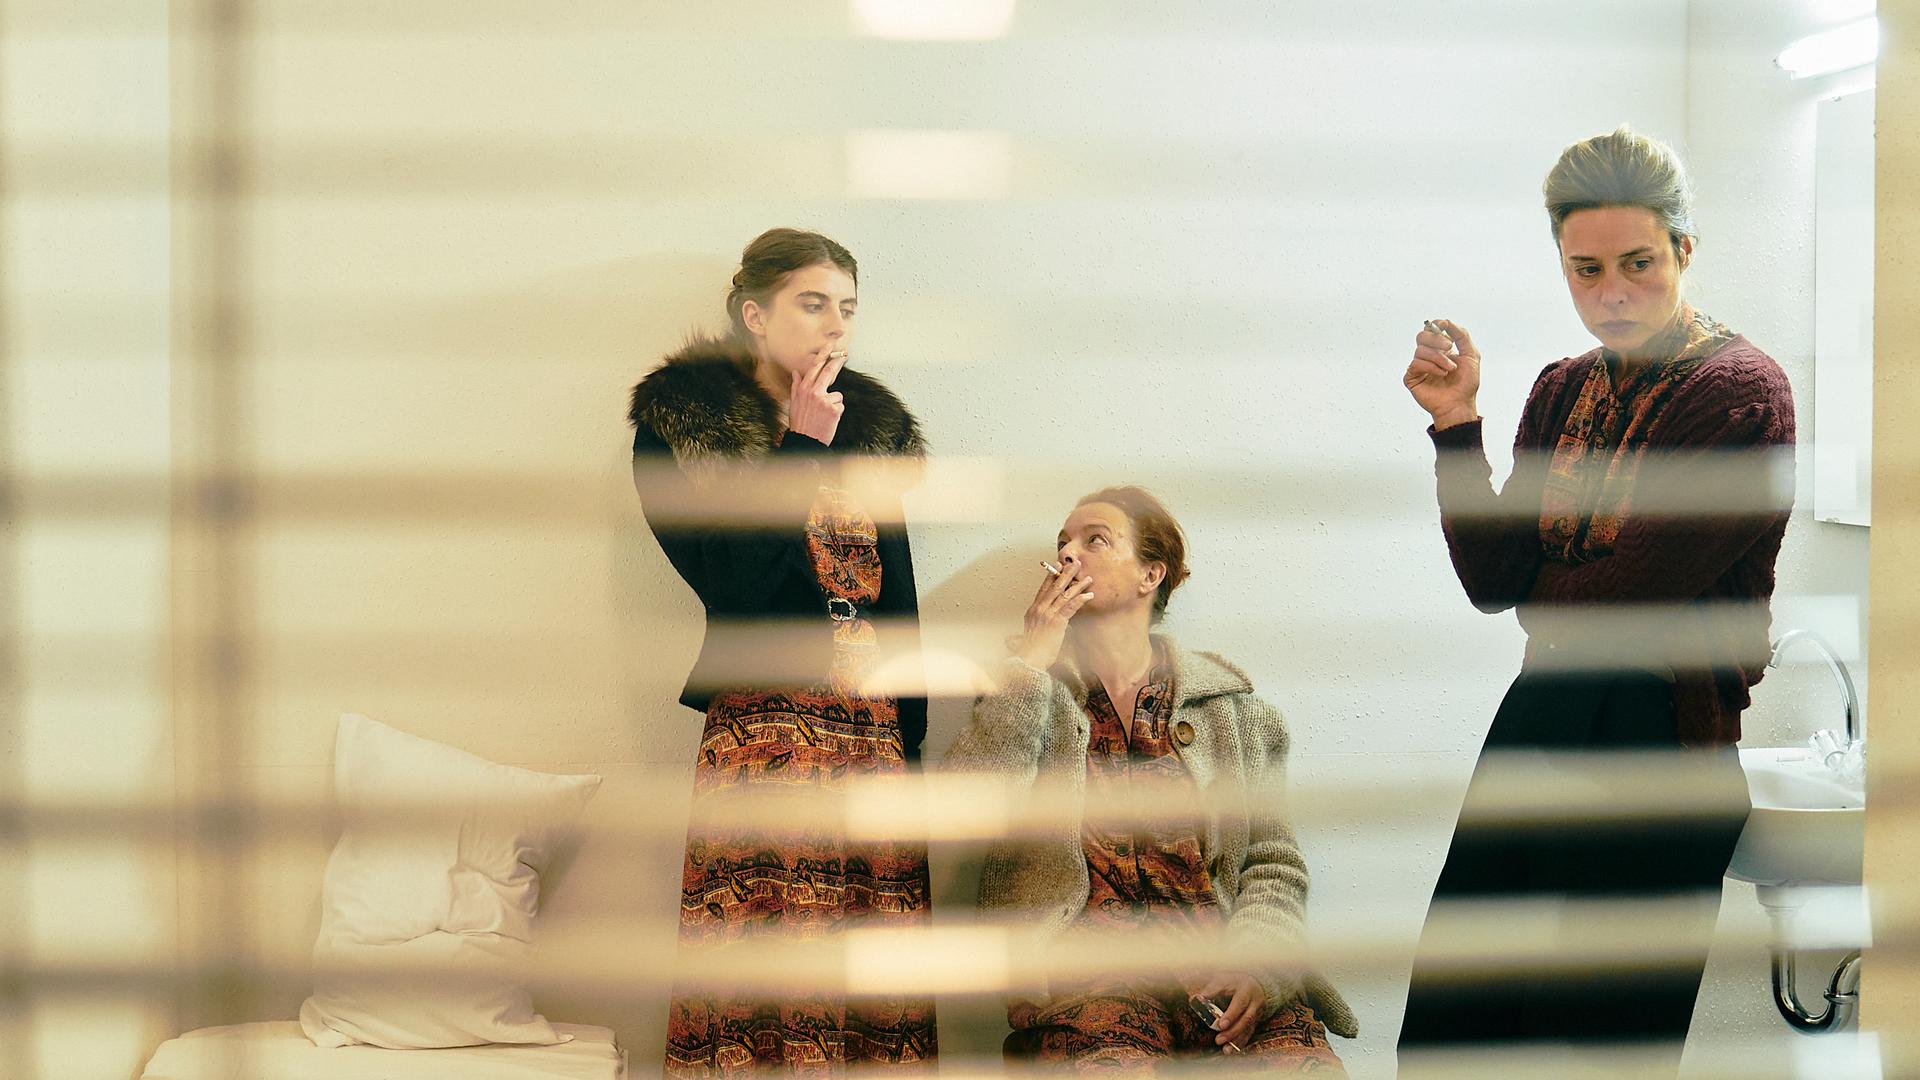 Aufnahme aus einer Szene des Theaterstücks "Berlau :: Königreich der Geister" von "Raum+Zeit" am Berliner Ensemble: Drei Frauen, fotografiert durch ein Fenster hinter geöffneten Jalousien, stehen in einem karg eingerichteten Zimmer und rauchen.